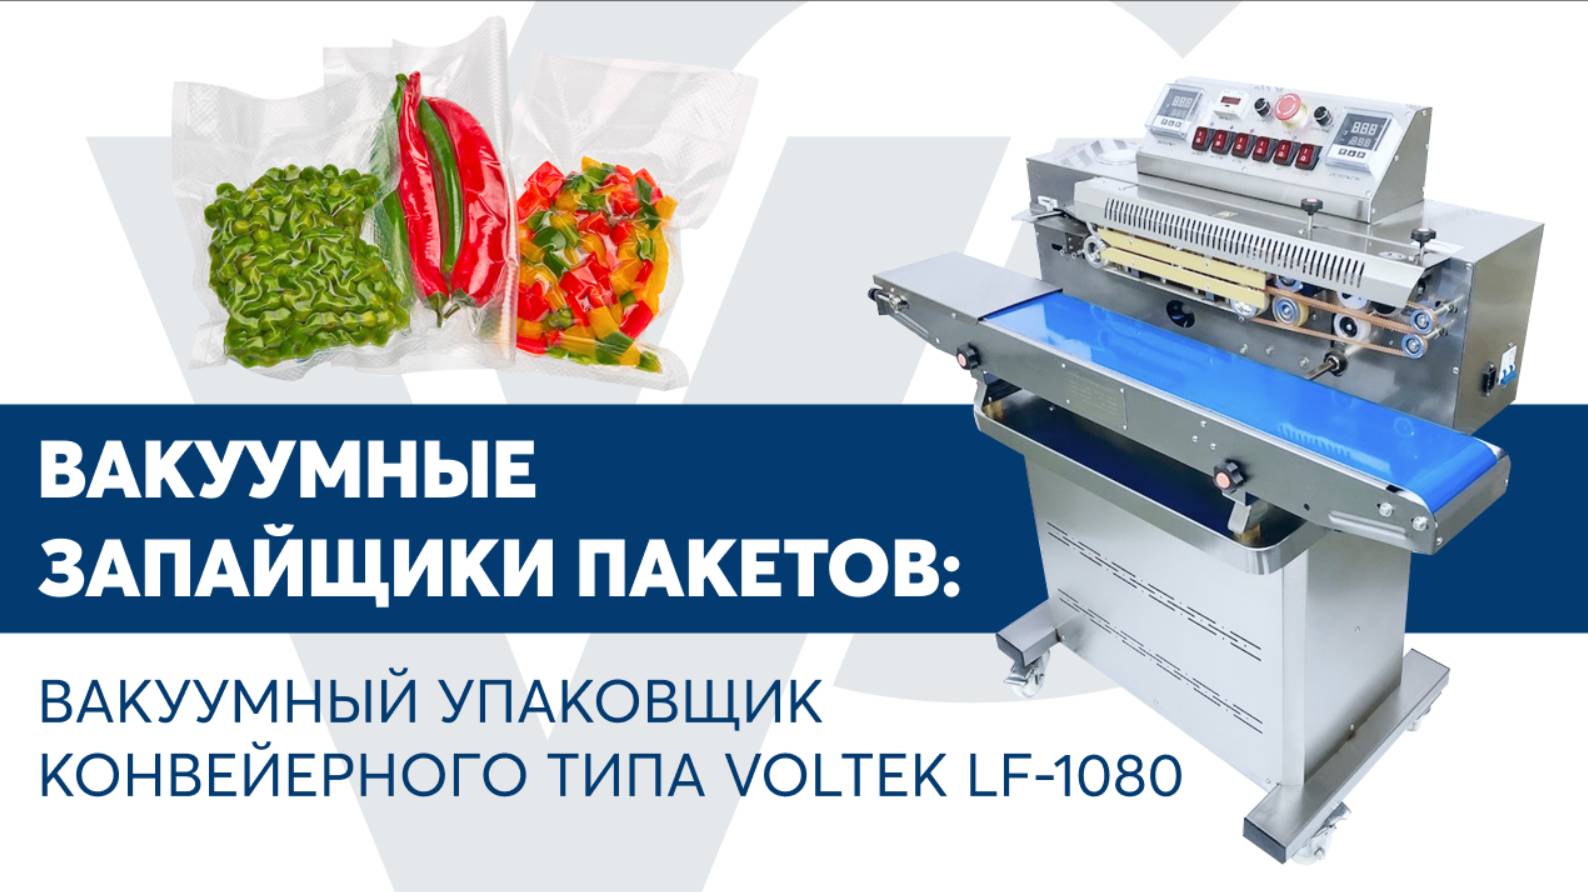 Вакуумный упаковщик конвейерного типа VOLTEK LF-1080